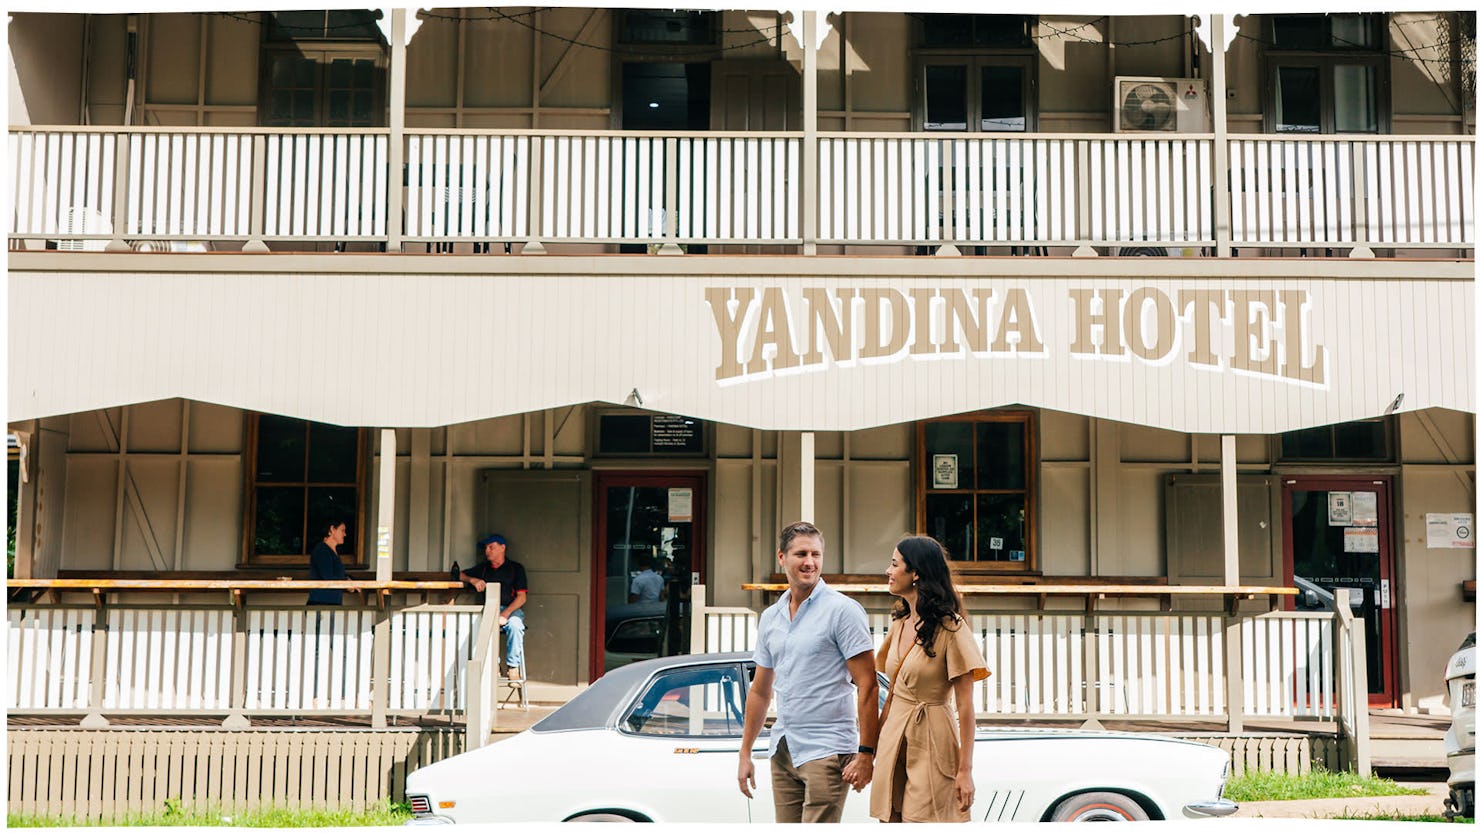 Yandina Hotel